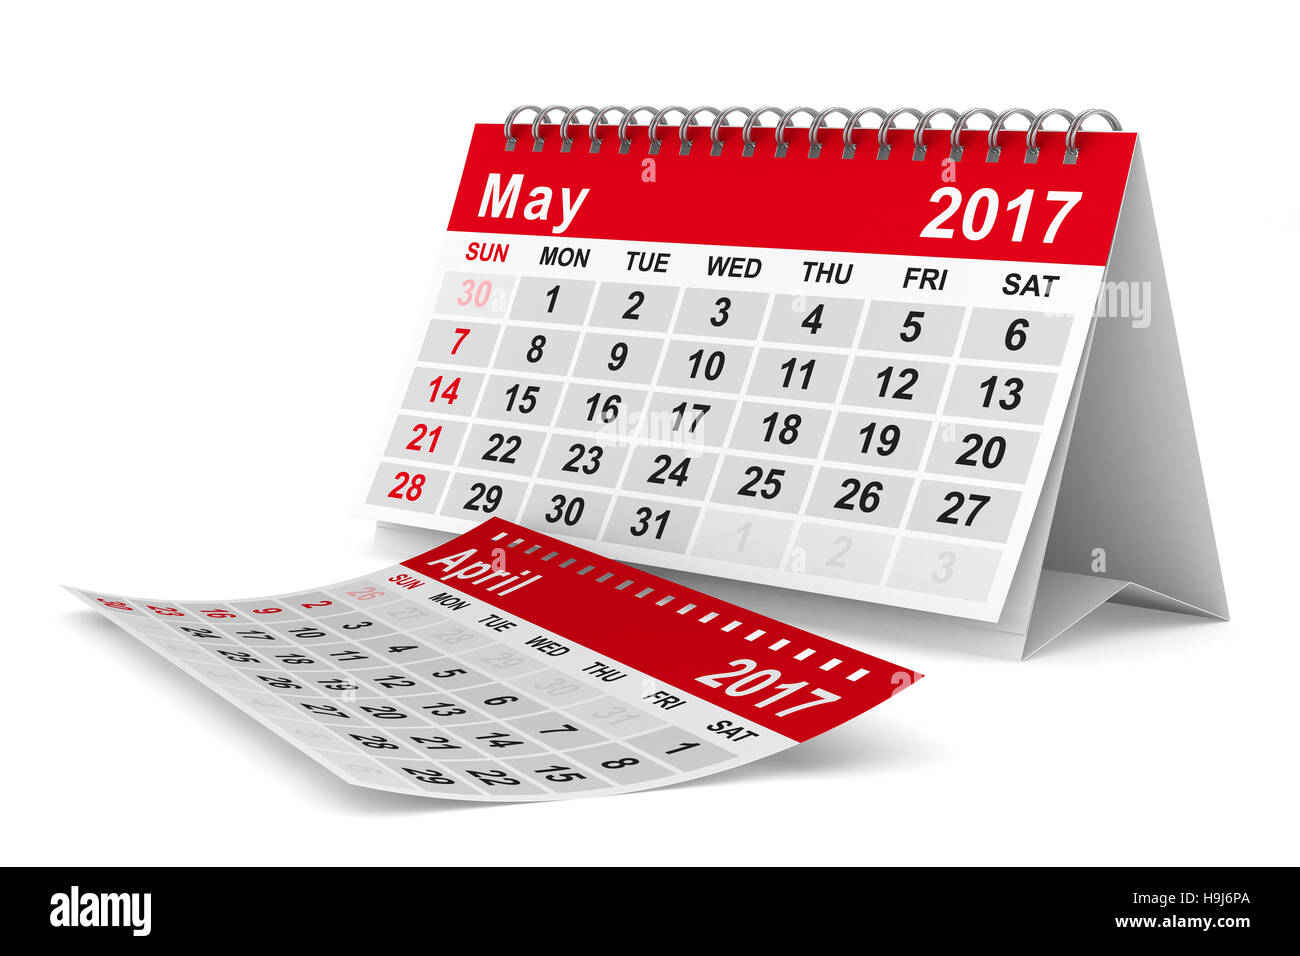 Calendrier de l'année 2017. Mai. Image 3D isolés Banque D'Images